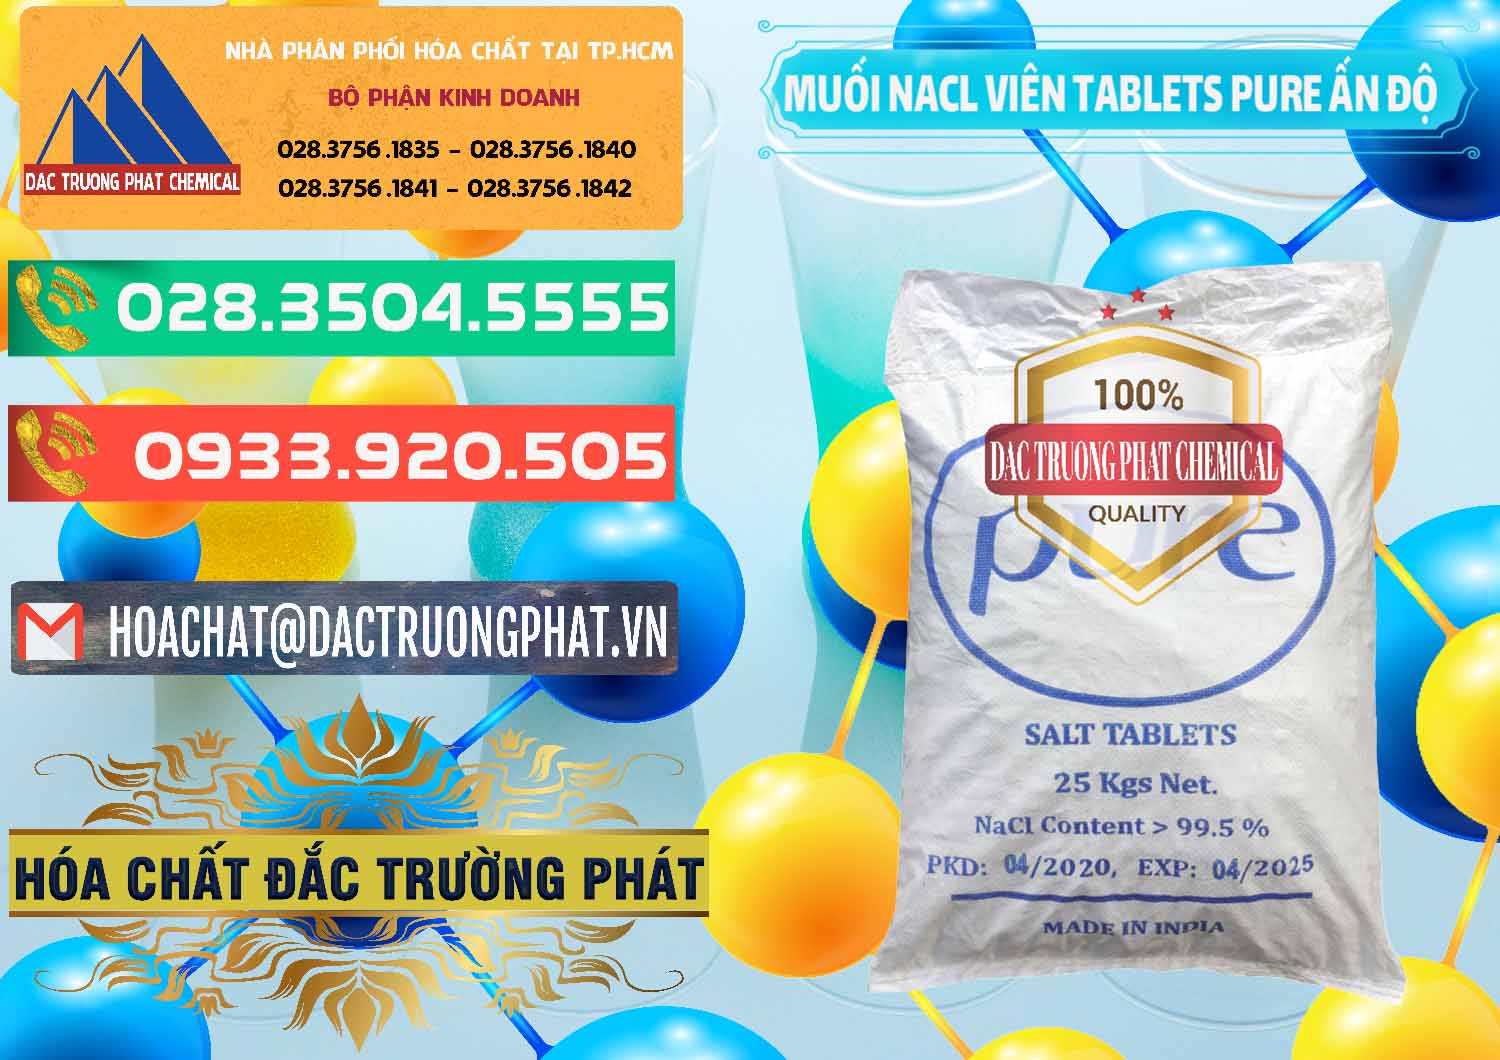 Bán ( phân phối ) Muối NaCL – Sodium Chloride Dạng Viên Tablets Pure Ấn Độ India - 0294 - Công ty chuyên kinh doanh - cung cấp hóa chất tại TP.HCM - congtyhoachat.com.vn